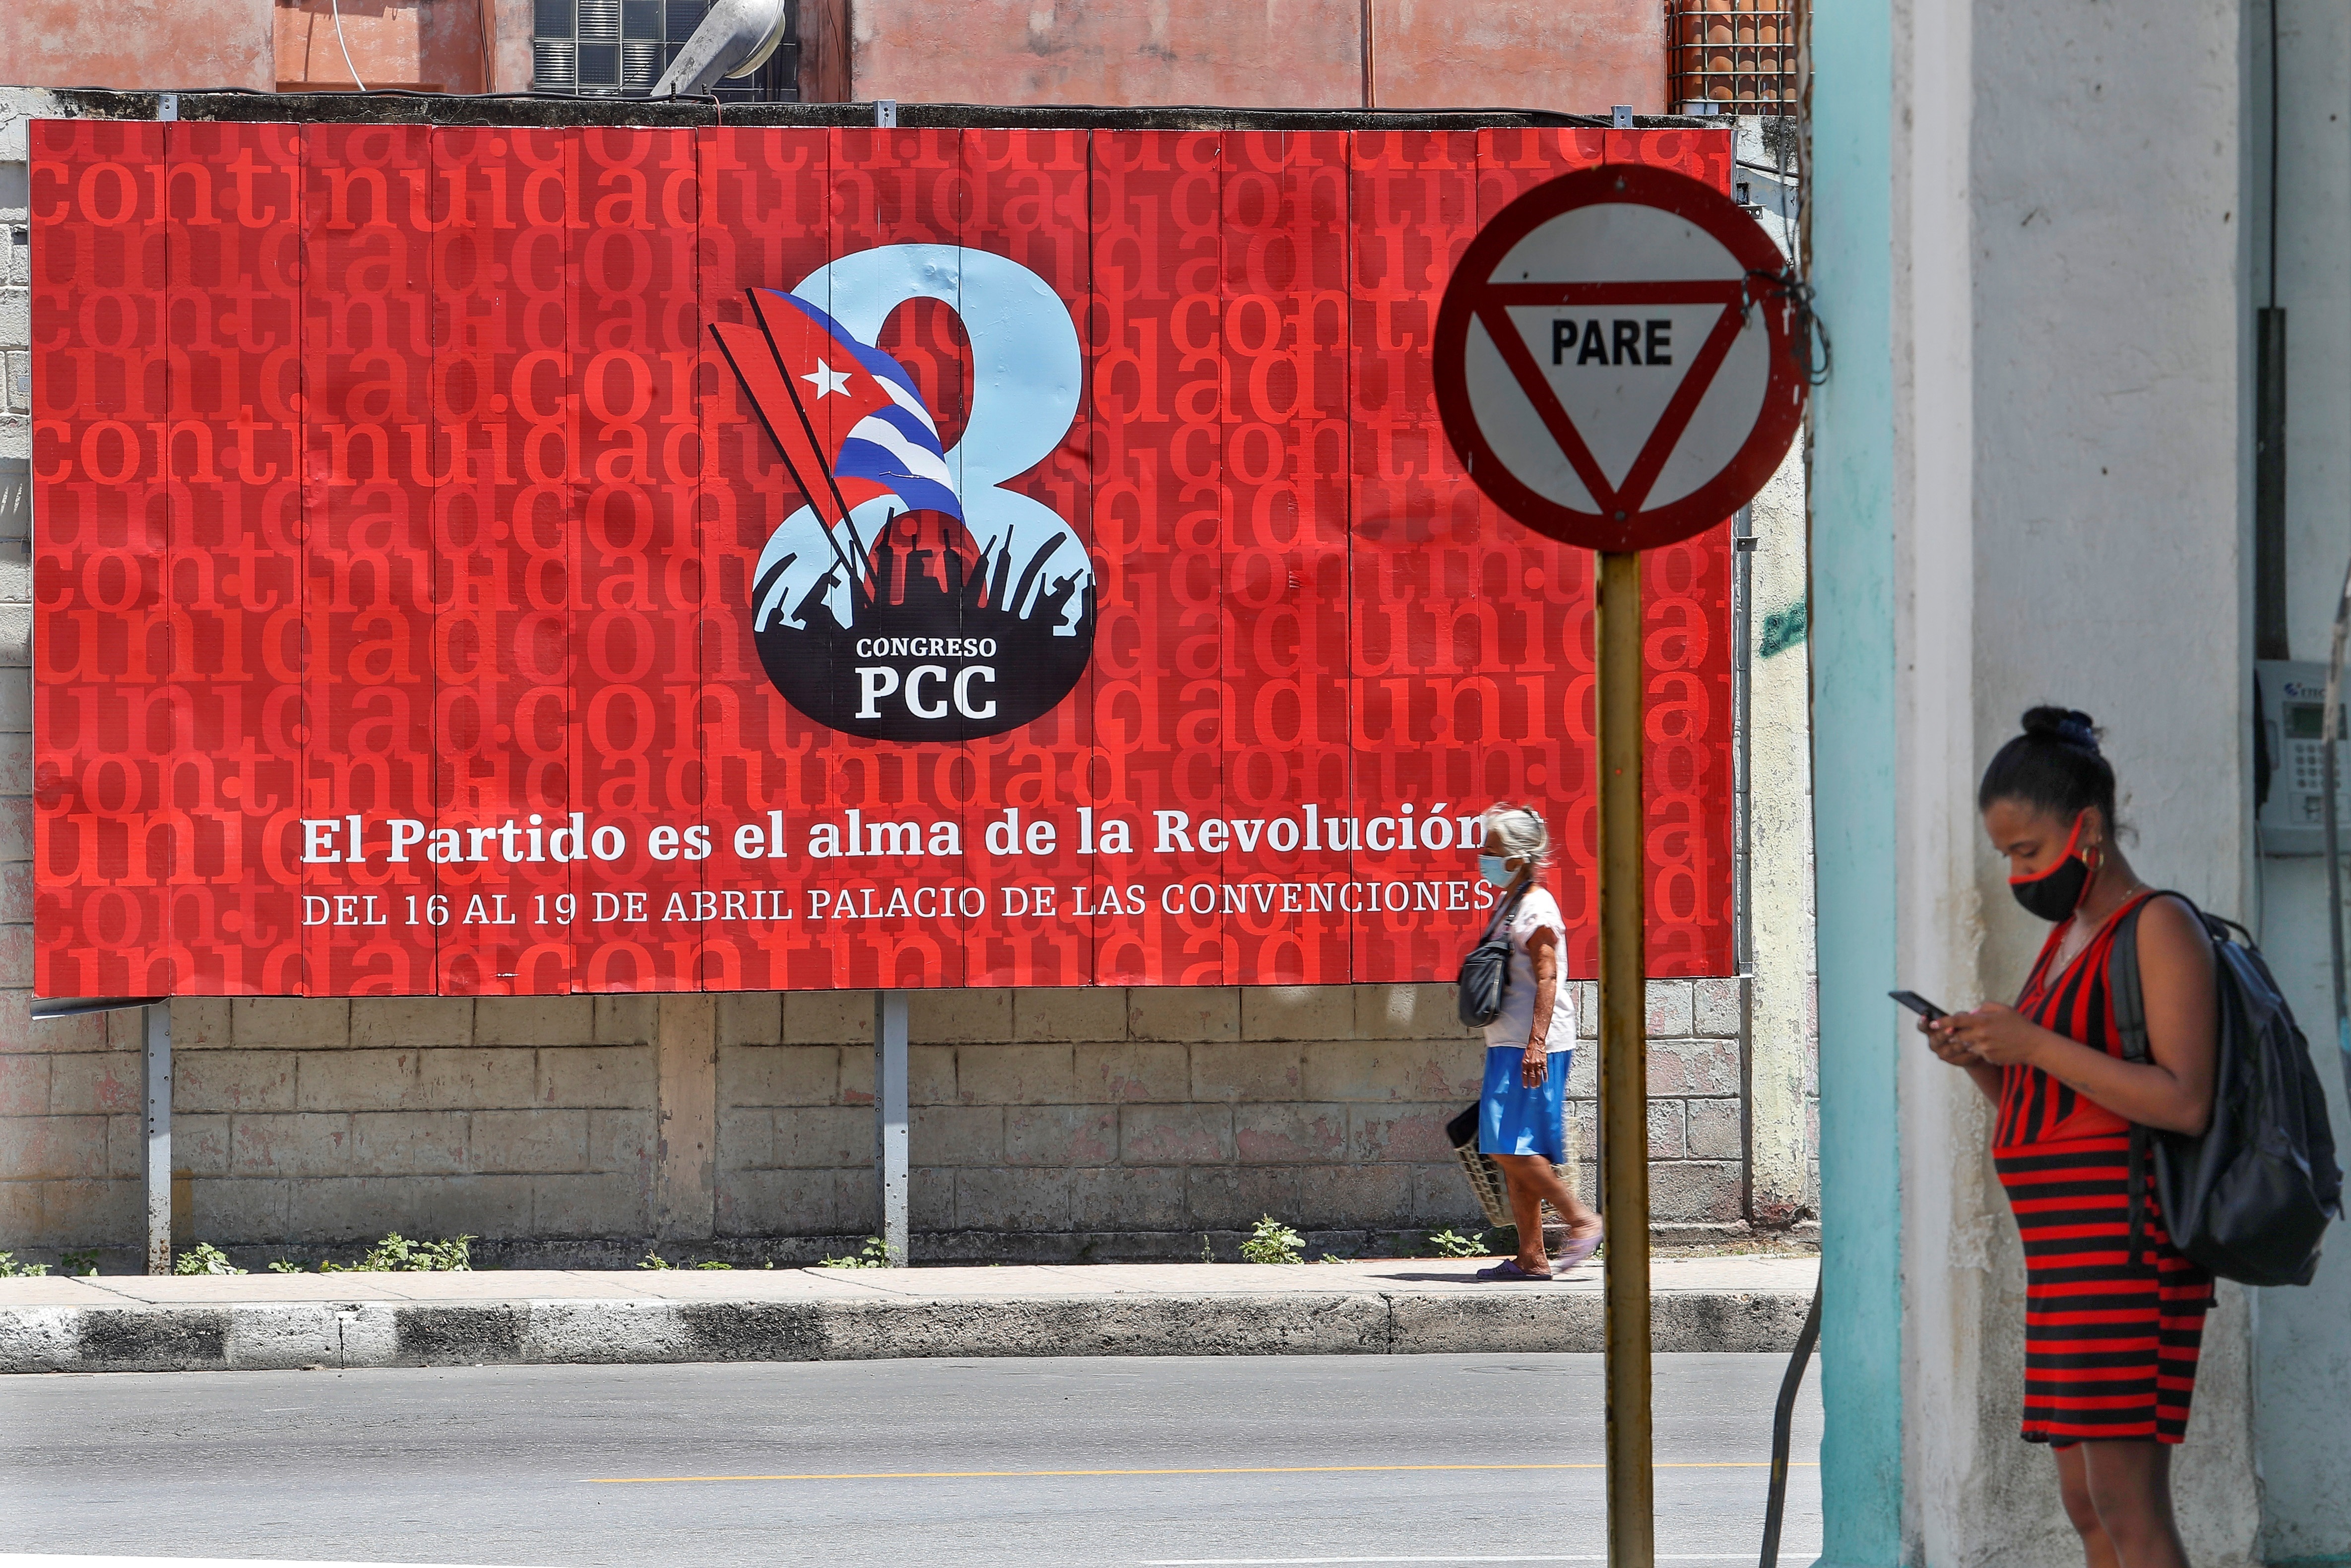 Organizaciones e internautas temen que la nueva medida anunciada  sirva al Gobierno para acallar las voces disidentes en las redes sociales y procesar a quienes critiquen al sistema cubano y sus dirigentes. EFE/Yander Zamora/Archivo
